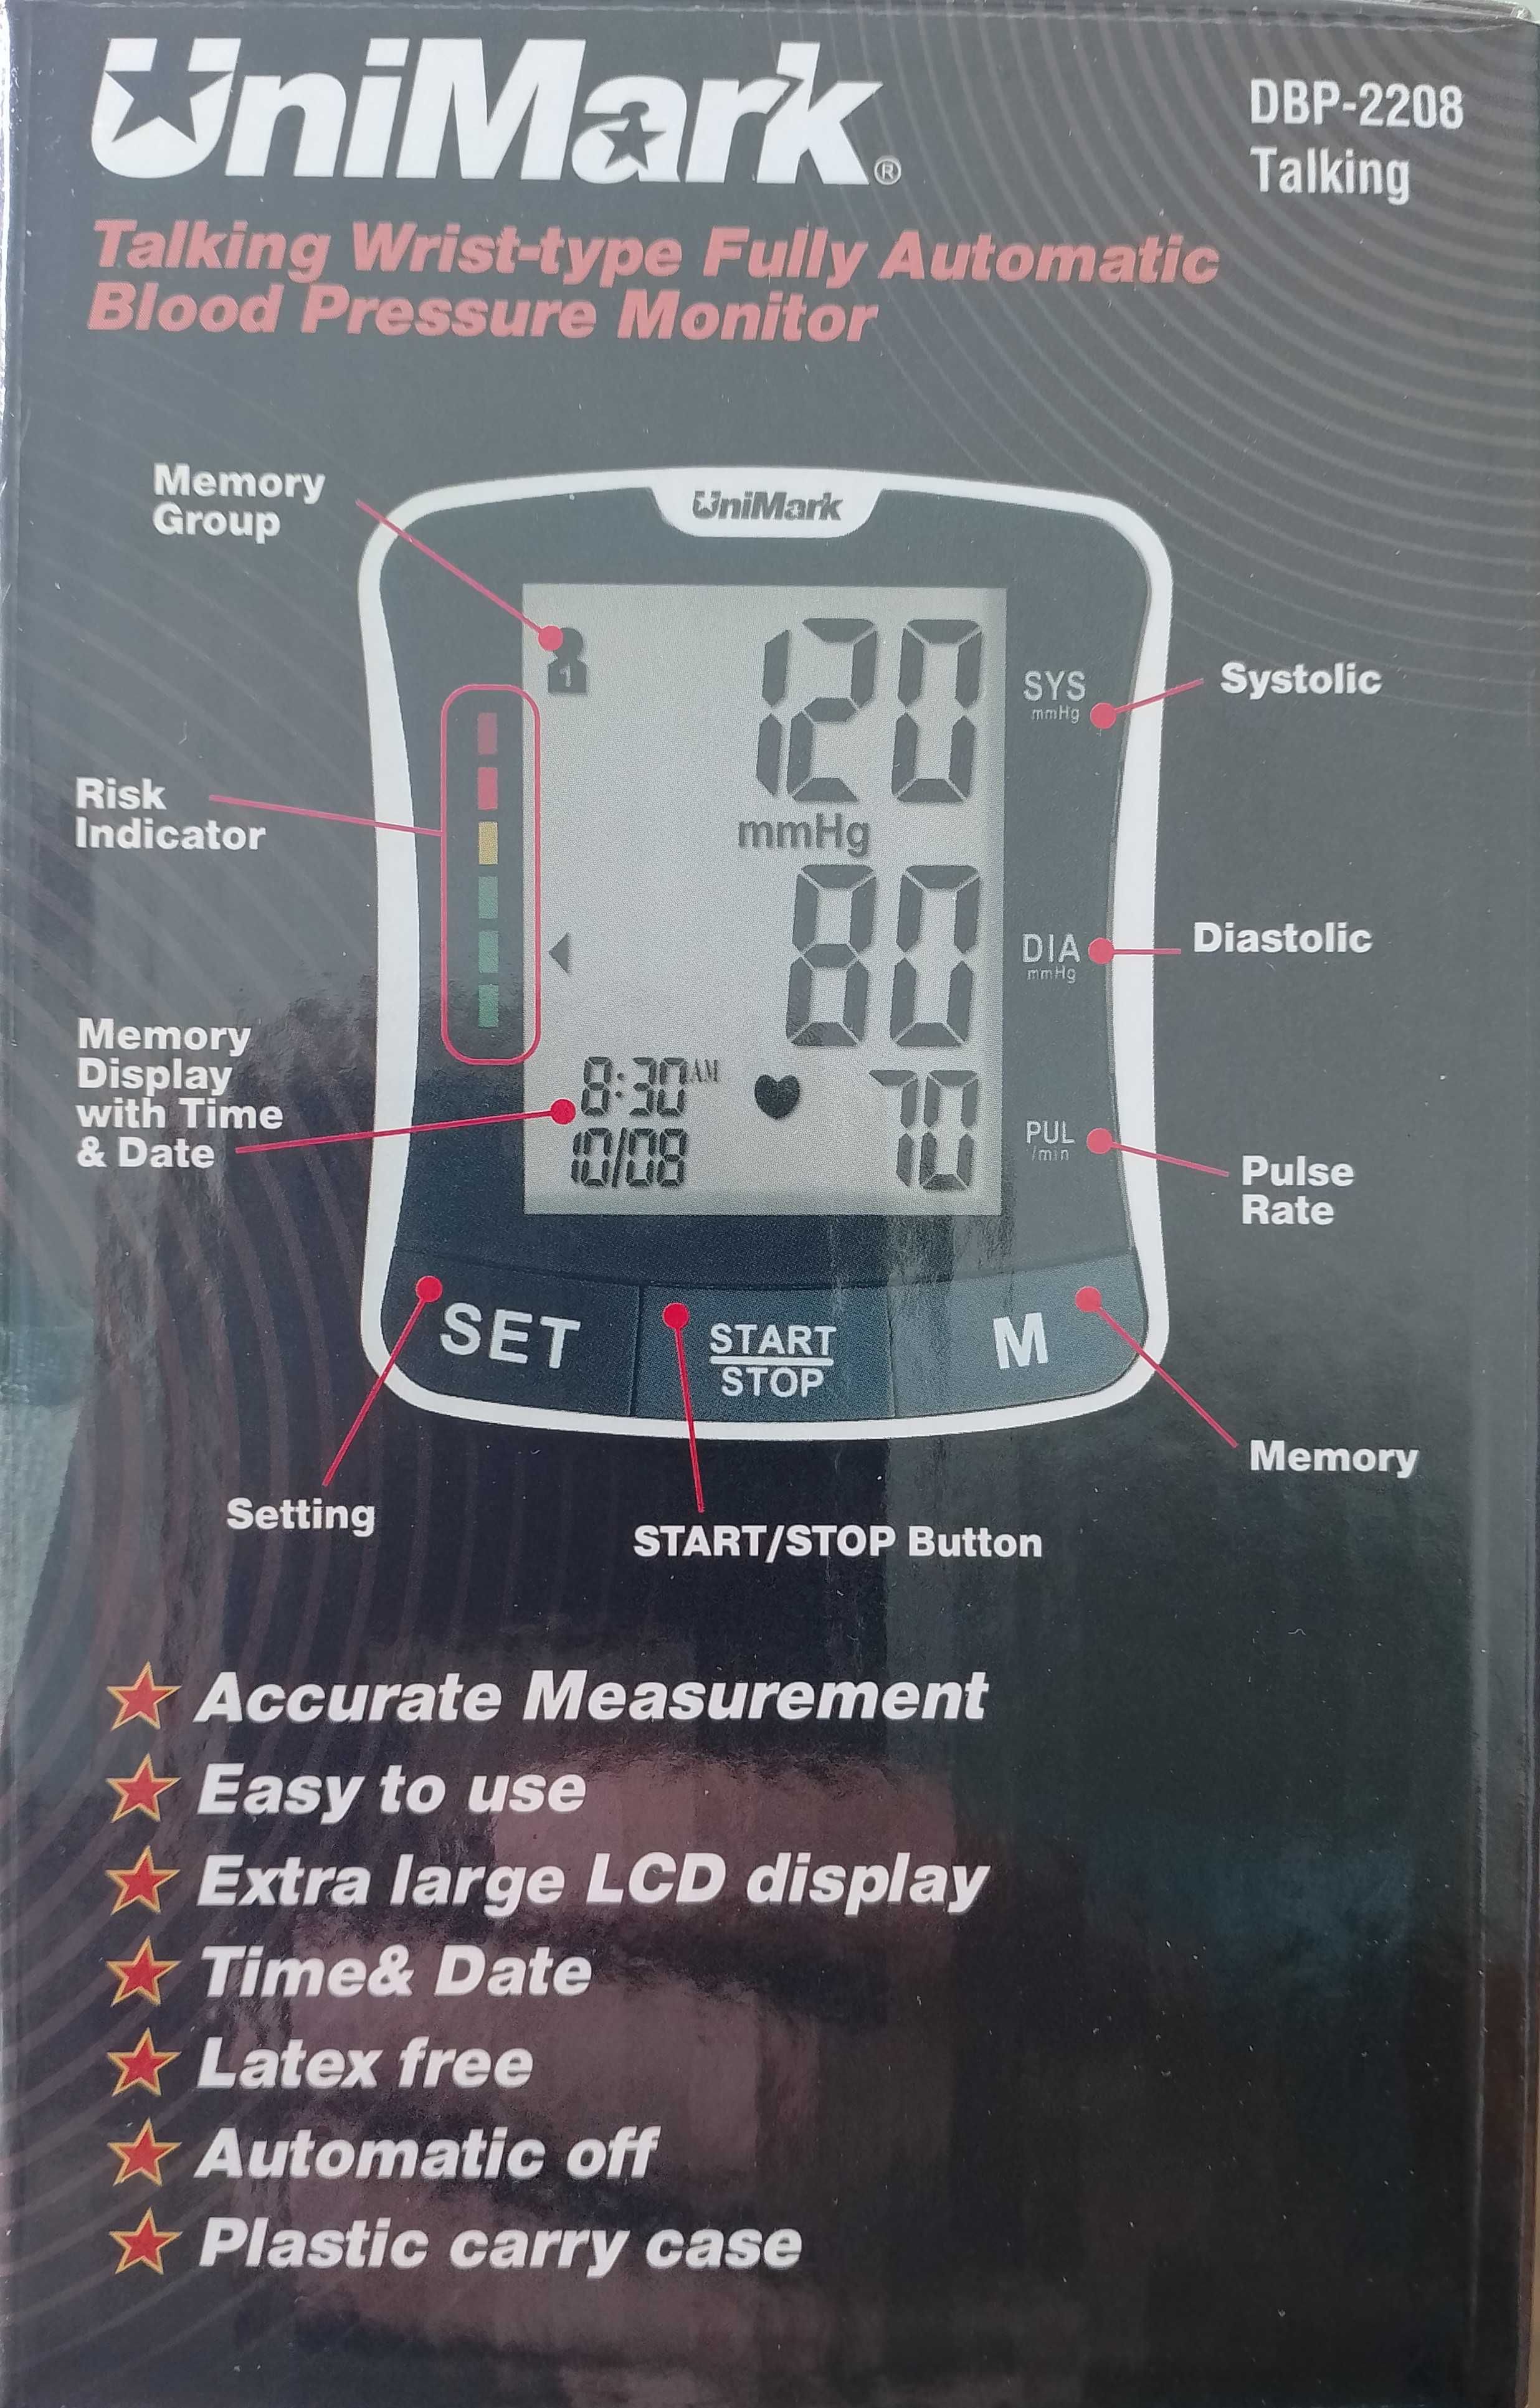 Апарат за измерване на кръвно налягане и пулс